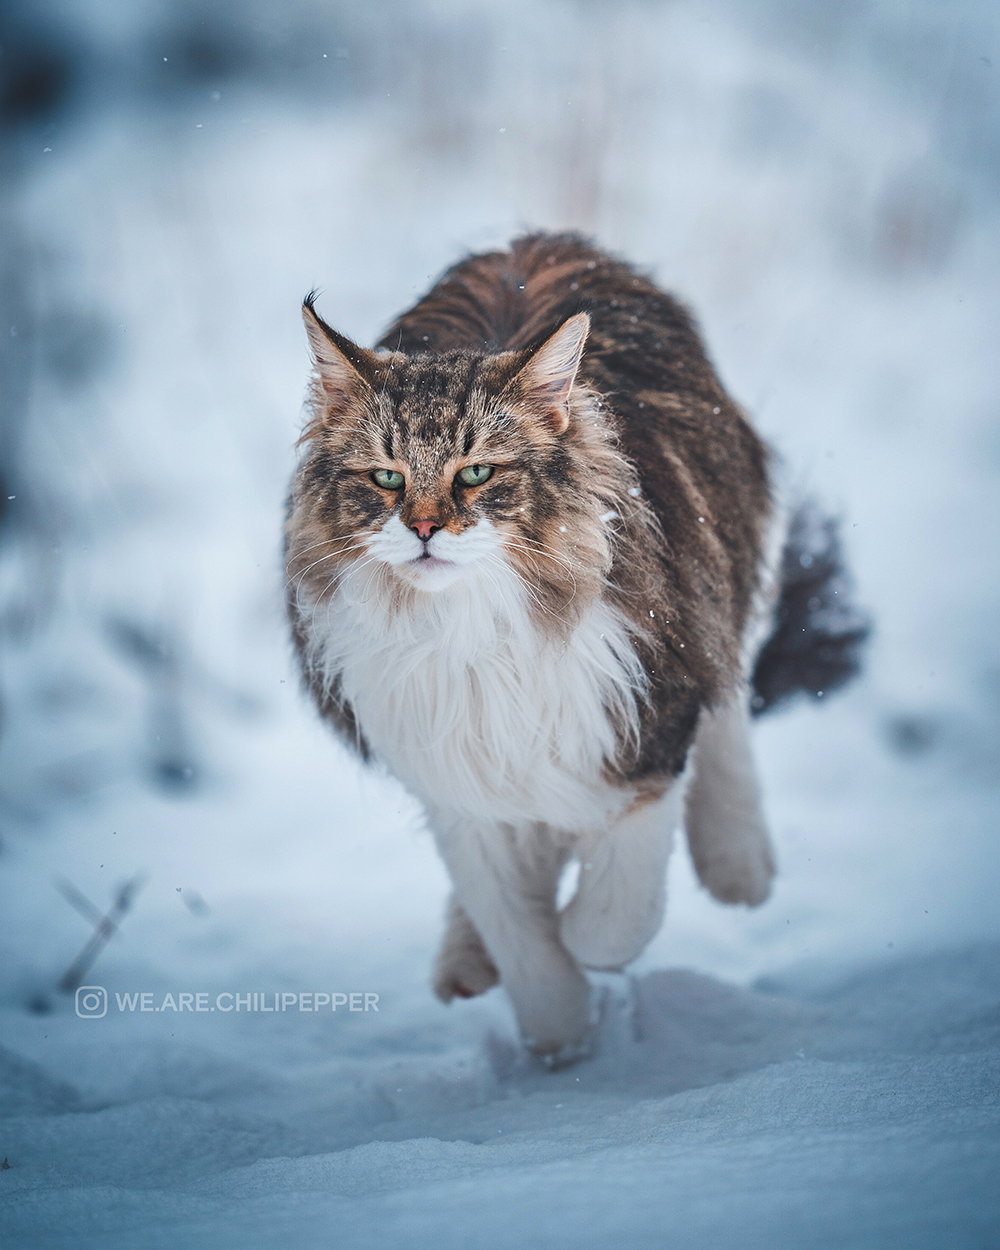 Pretty cat in snow